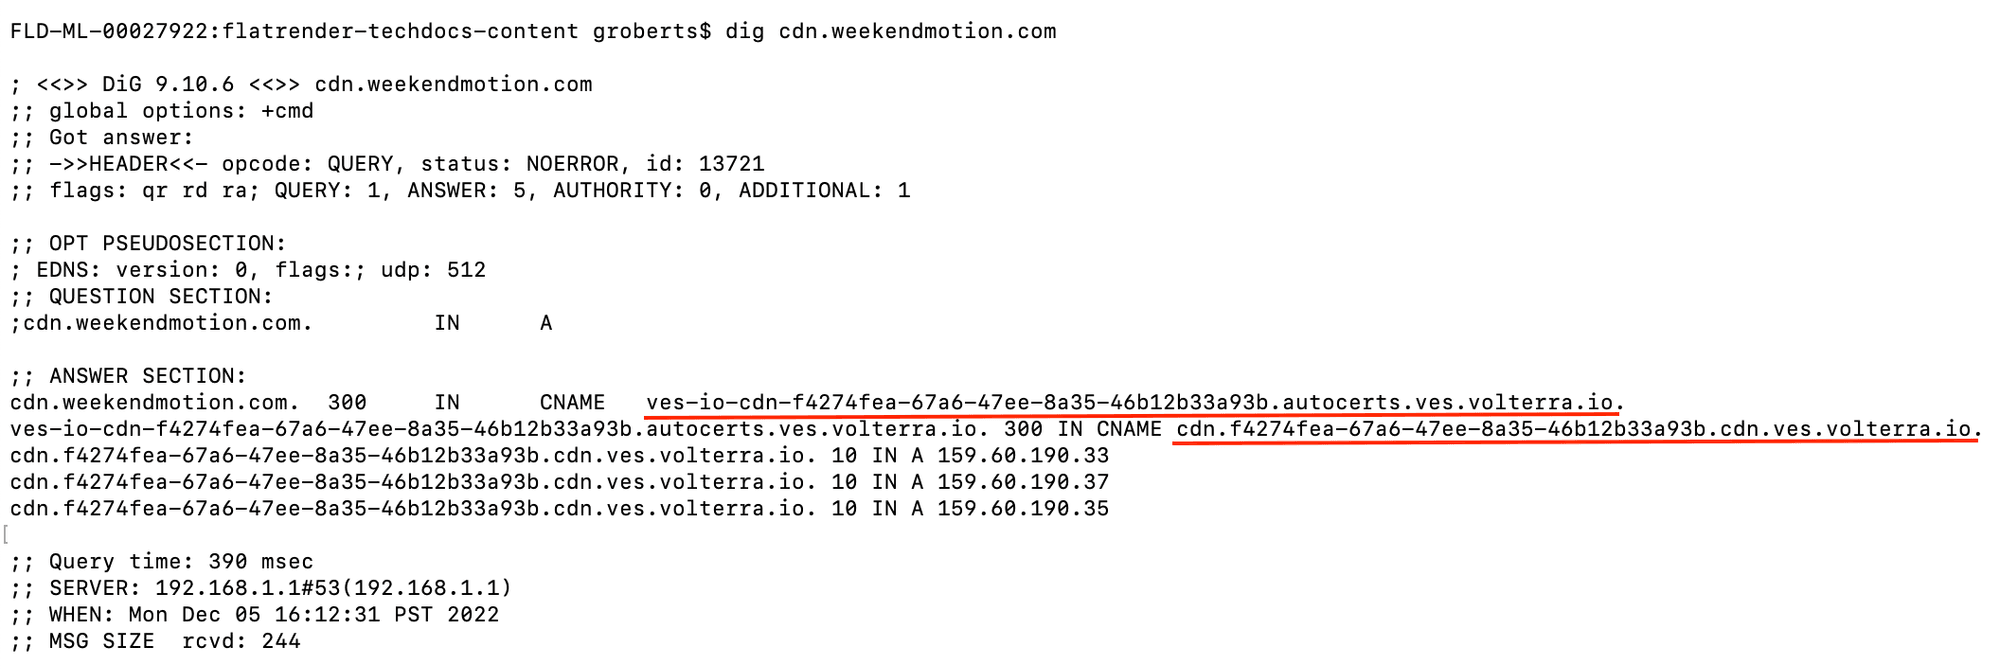 CDN Service Domain